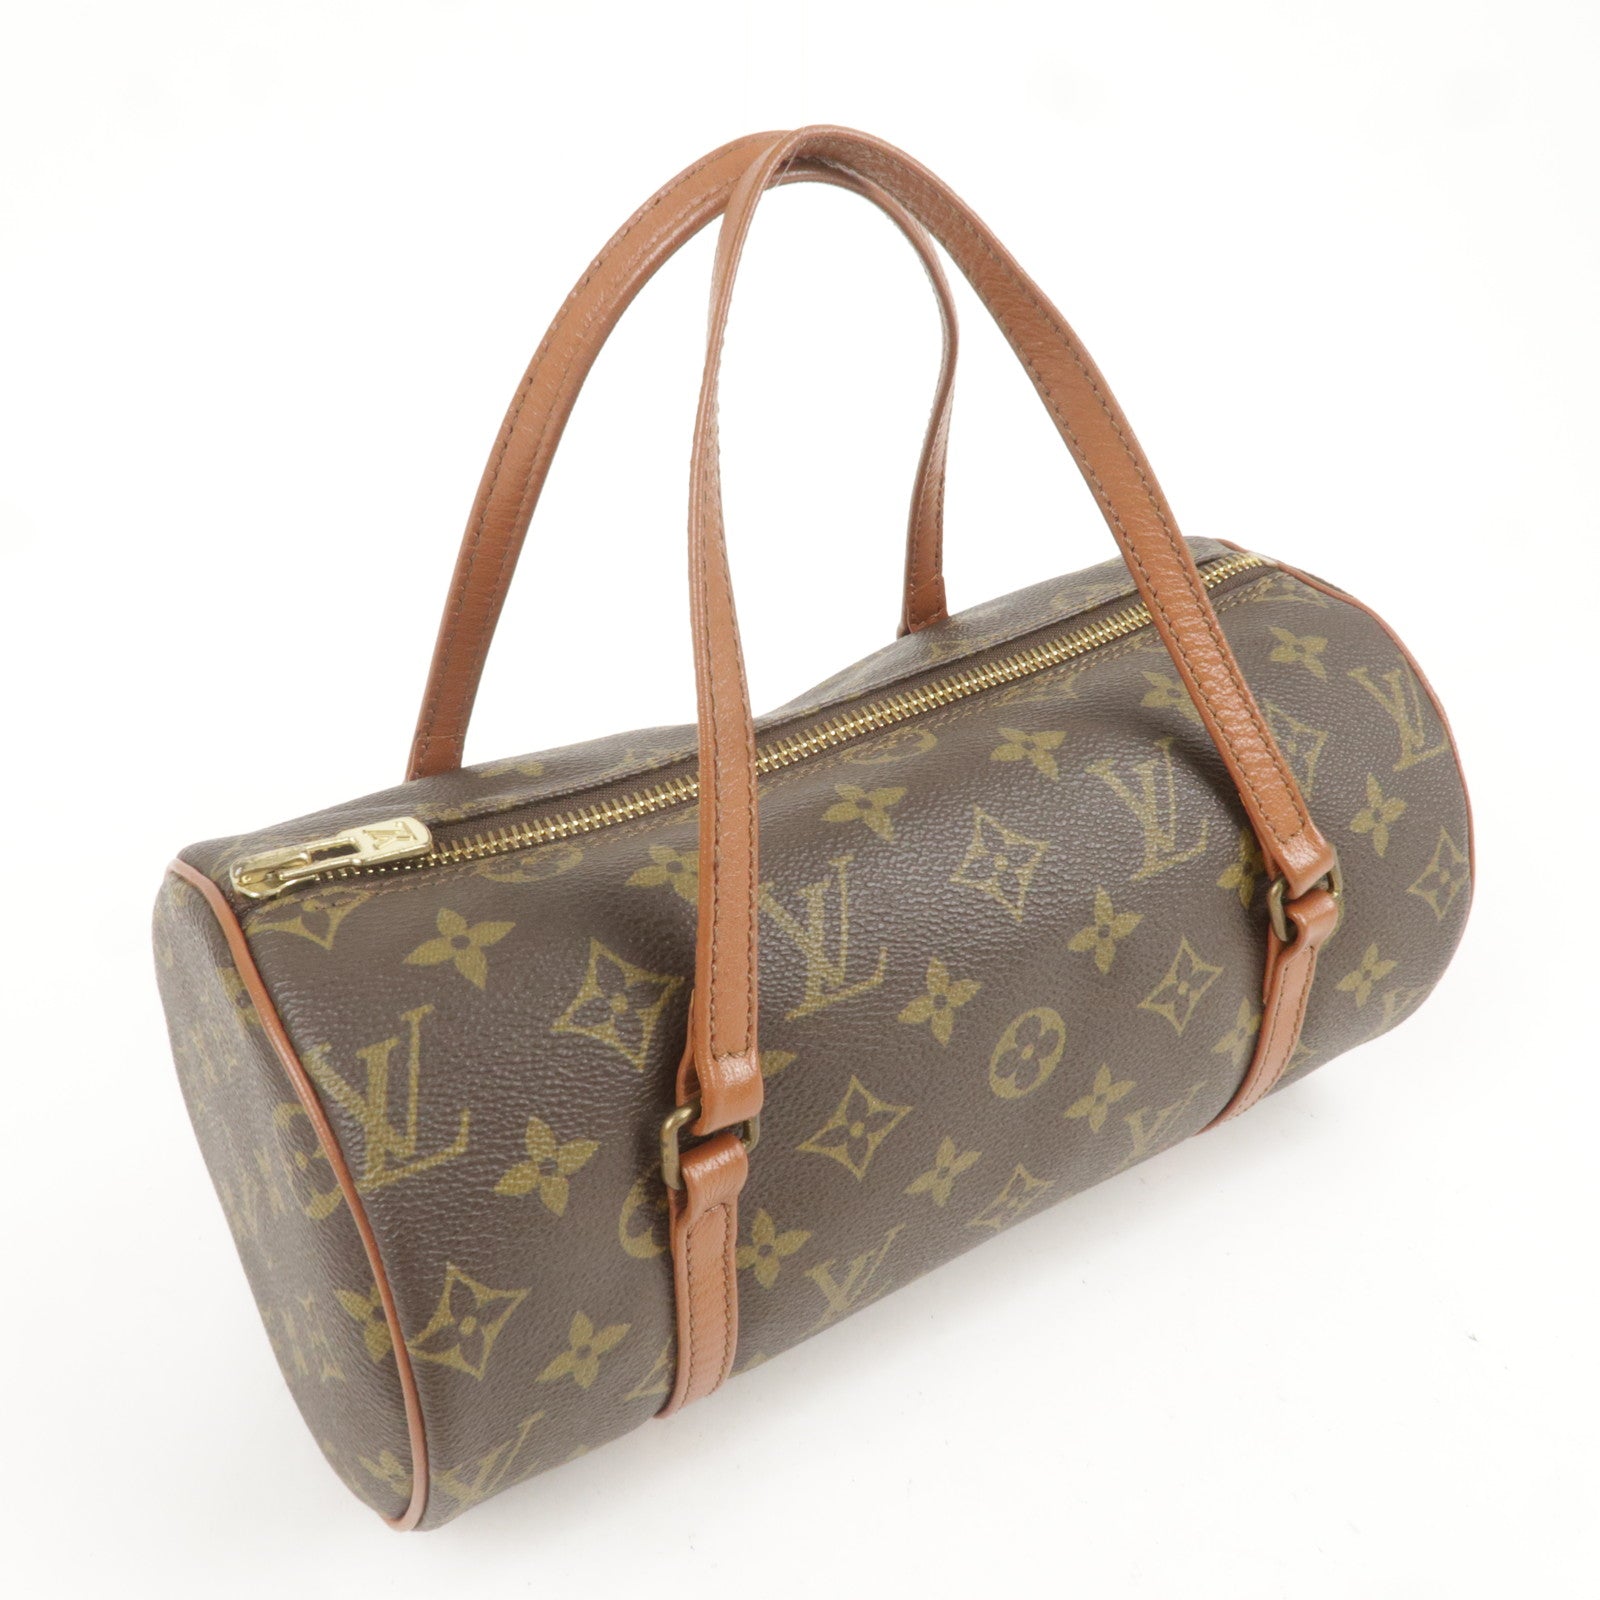 Vintage Louis Vuitton Bags, Authentic Louis Vuitton Bags